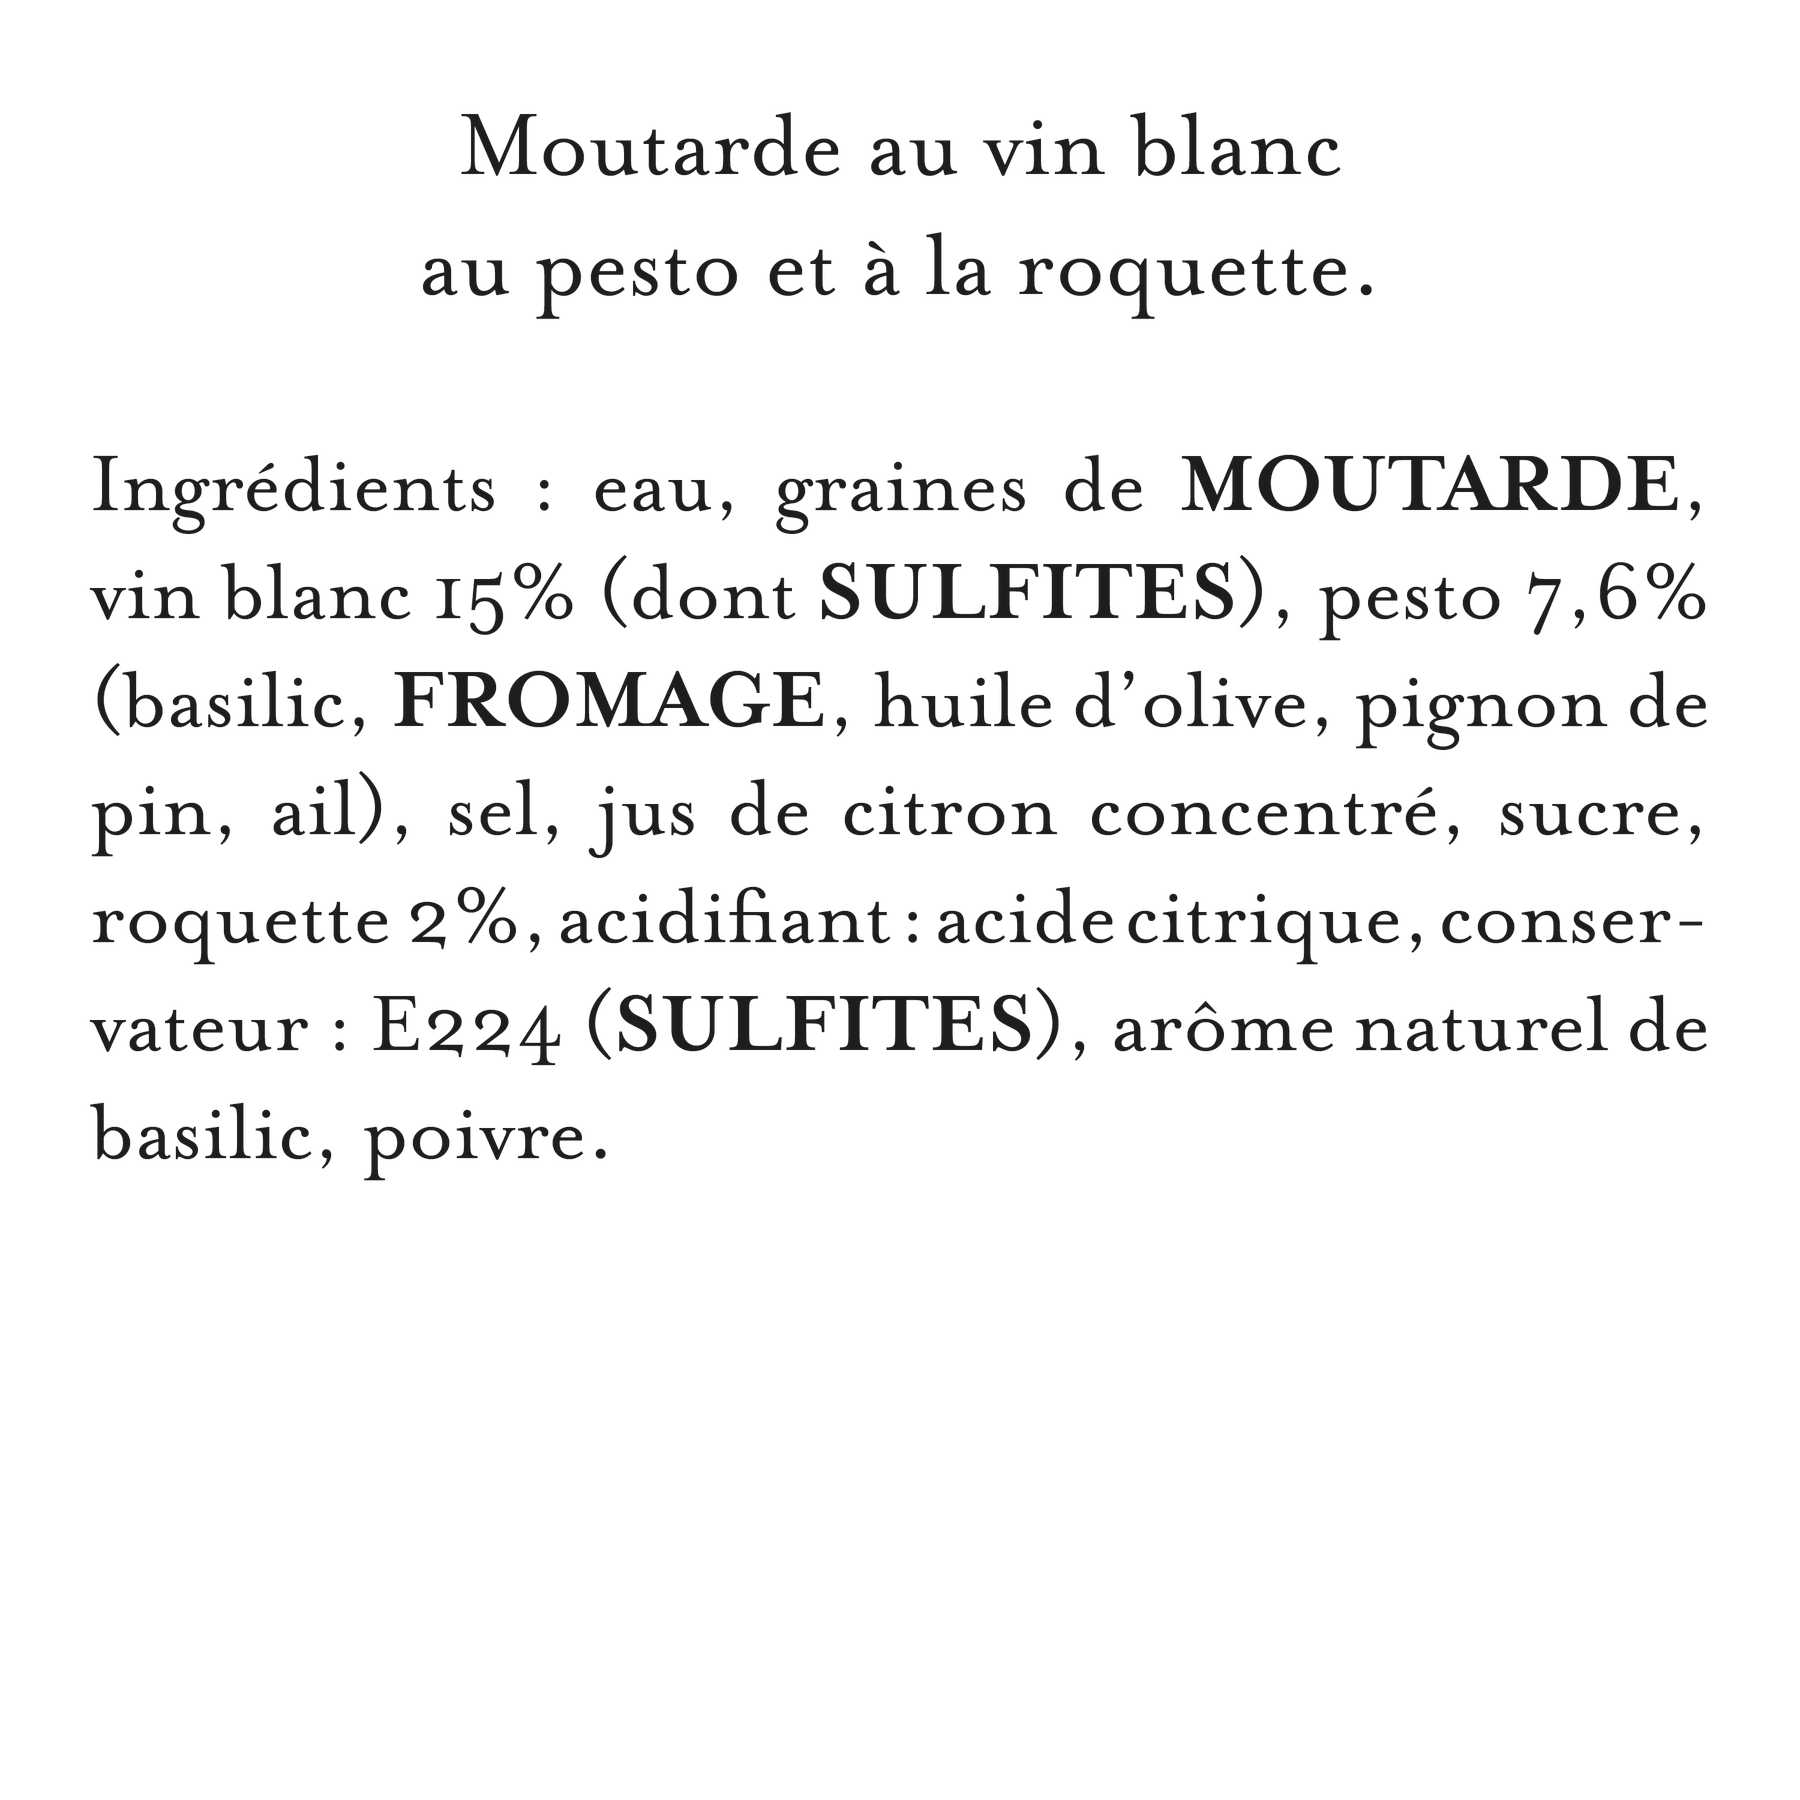 Maille - Moutarde au vin blanc, pesto et roquette, 108 g, liste d'ingrédients